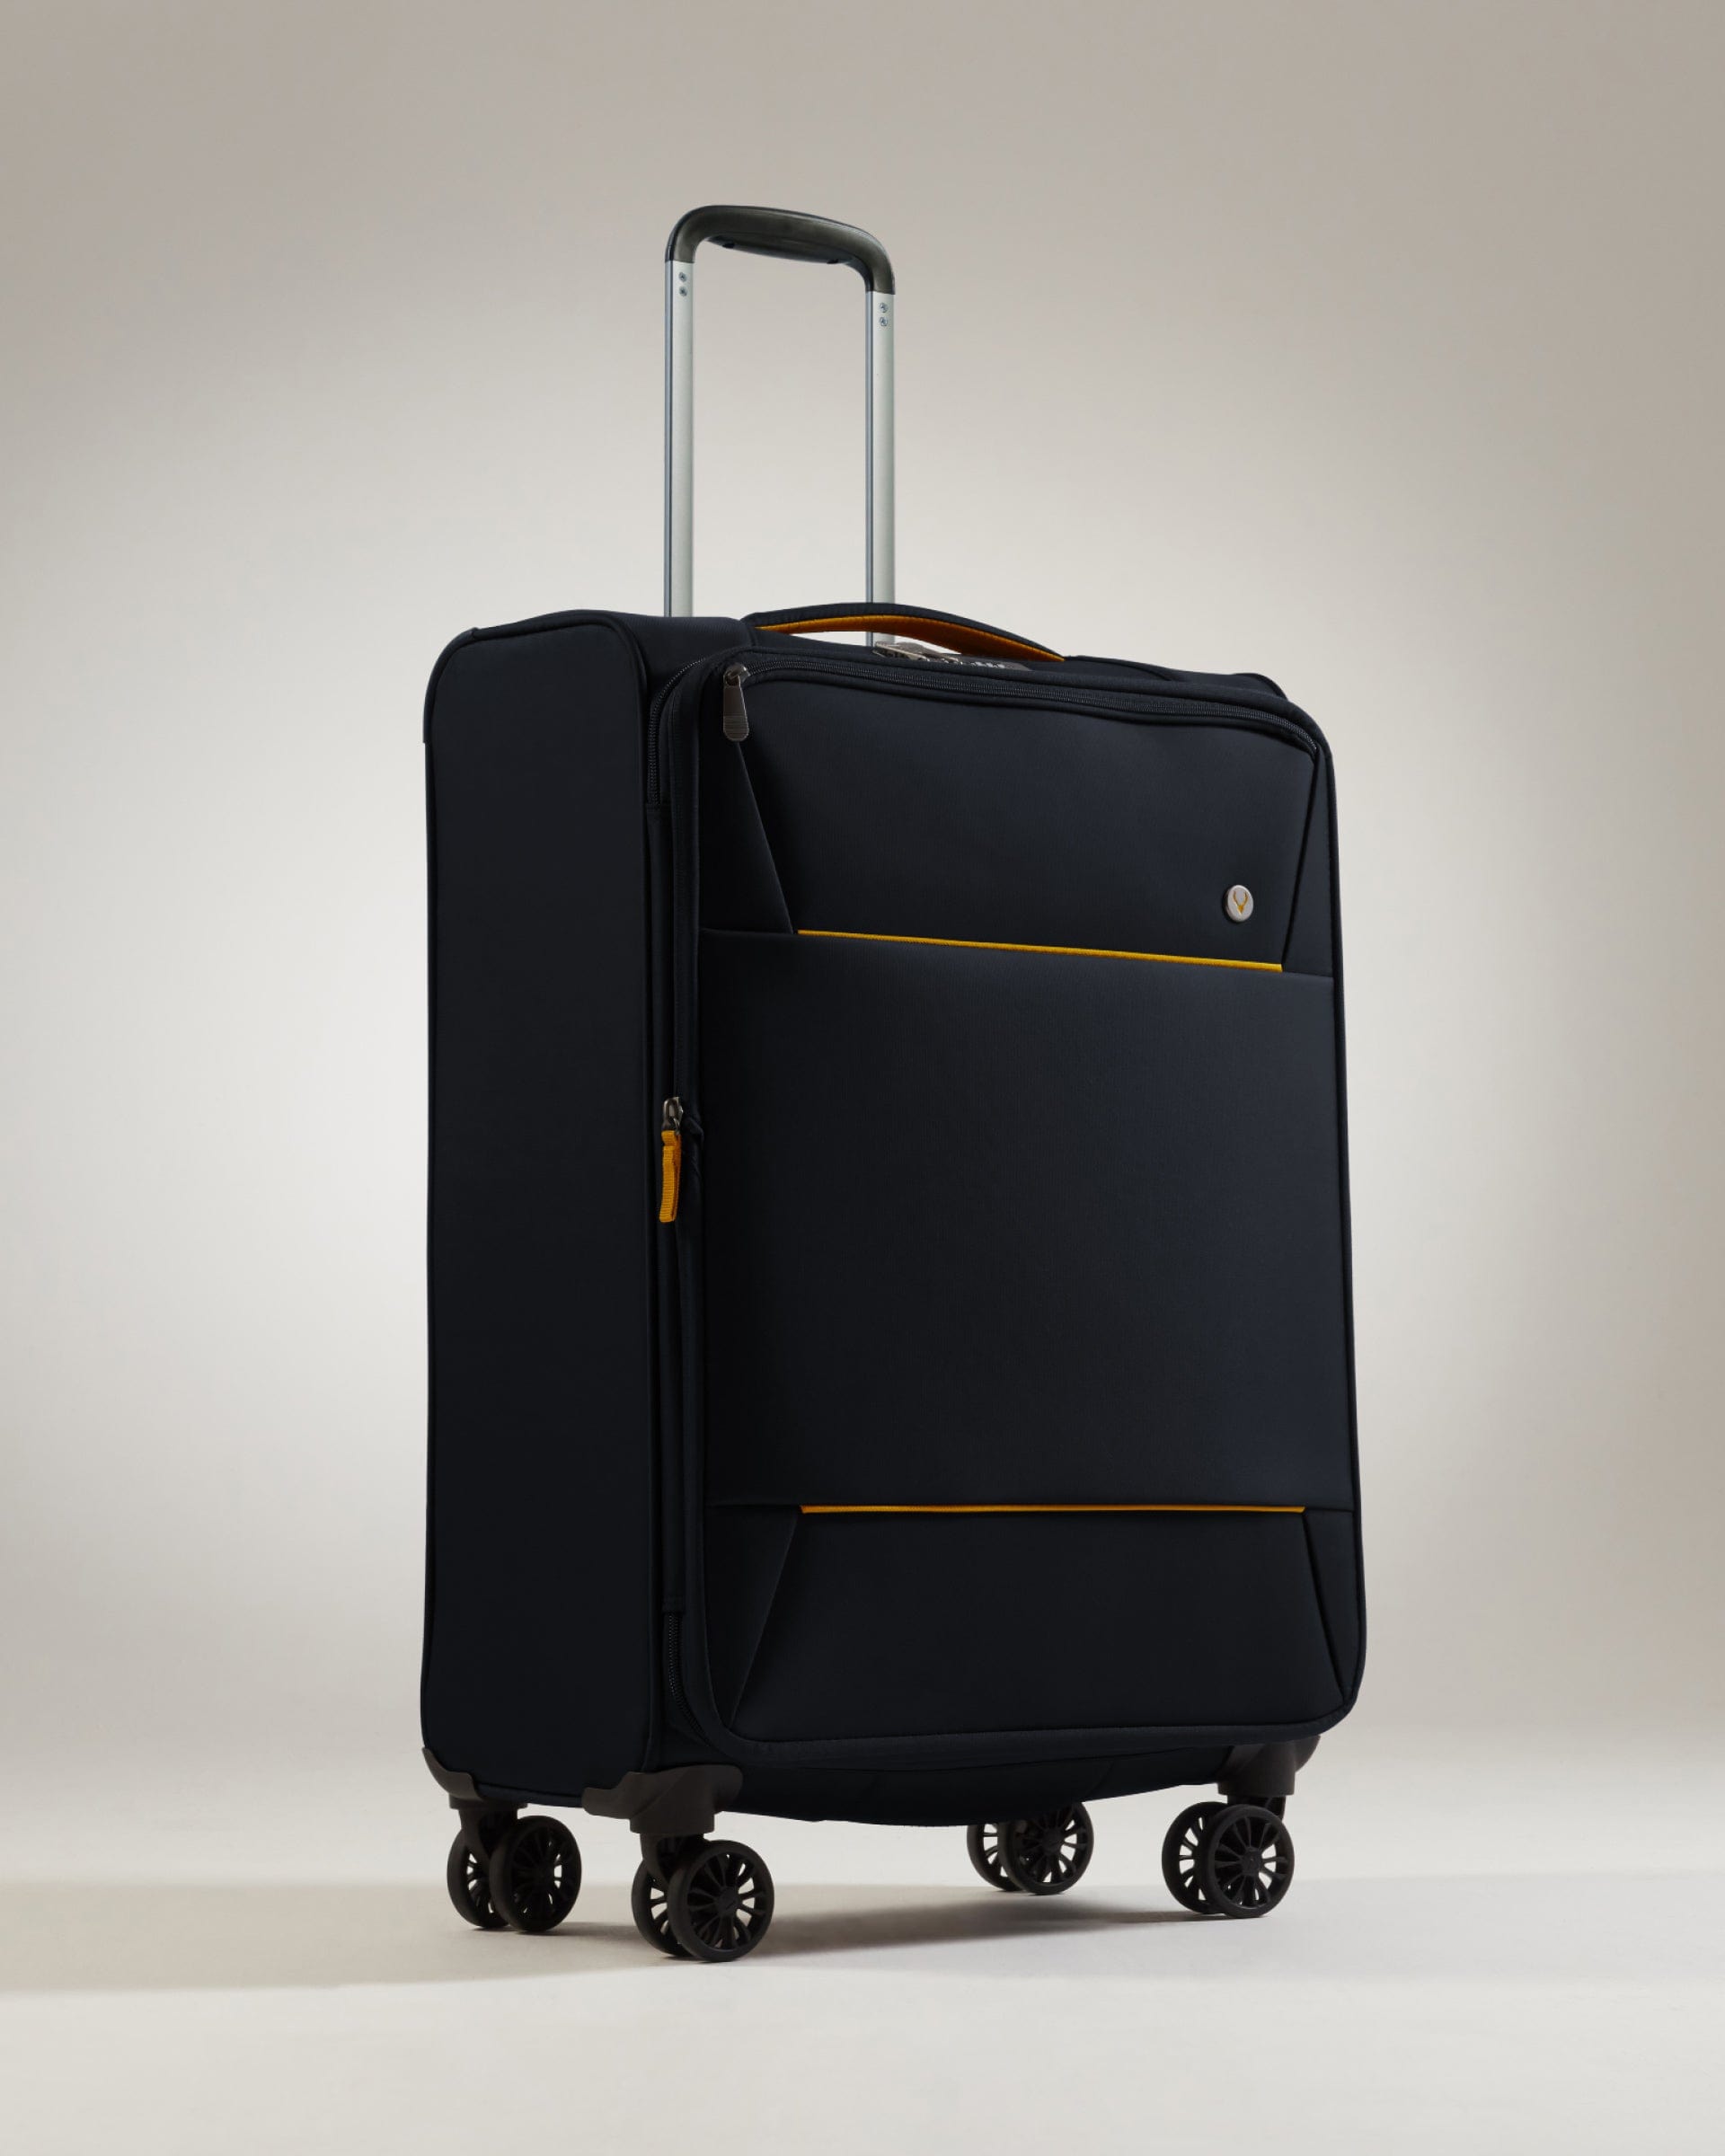 View Antler Brixham Medium Suitcase In Black Size 71 x 435 x 28 cm information